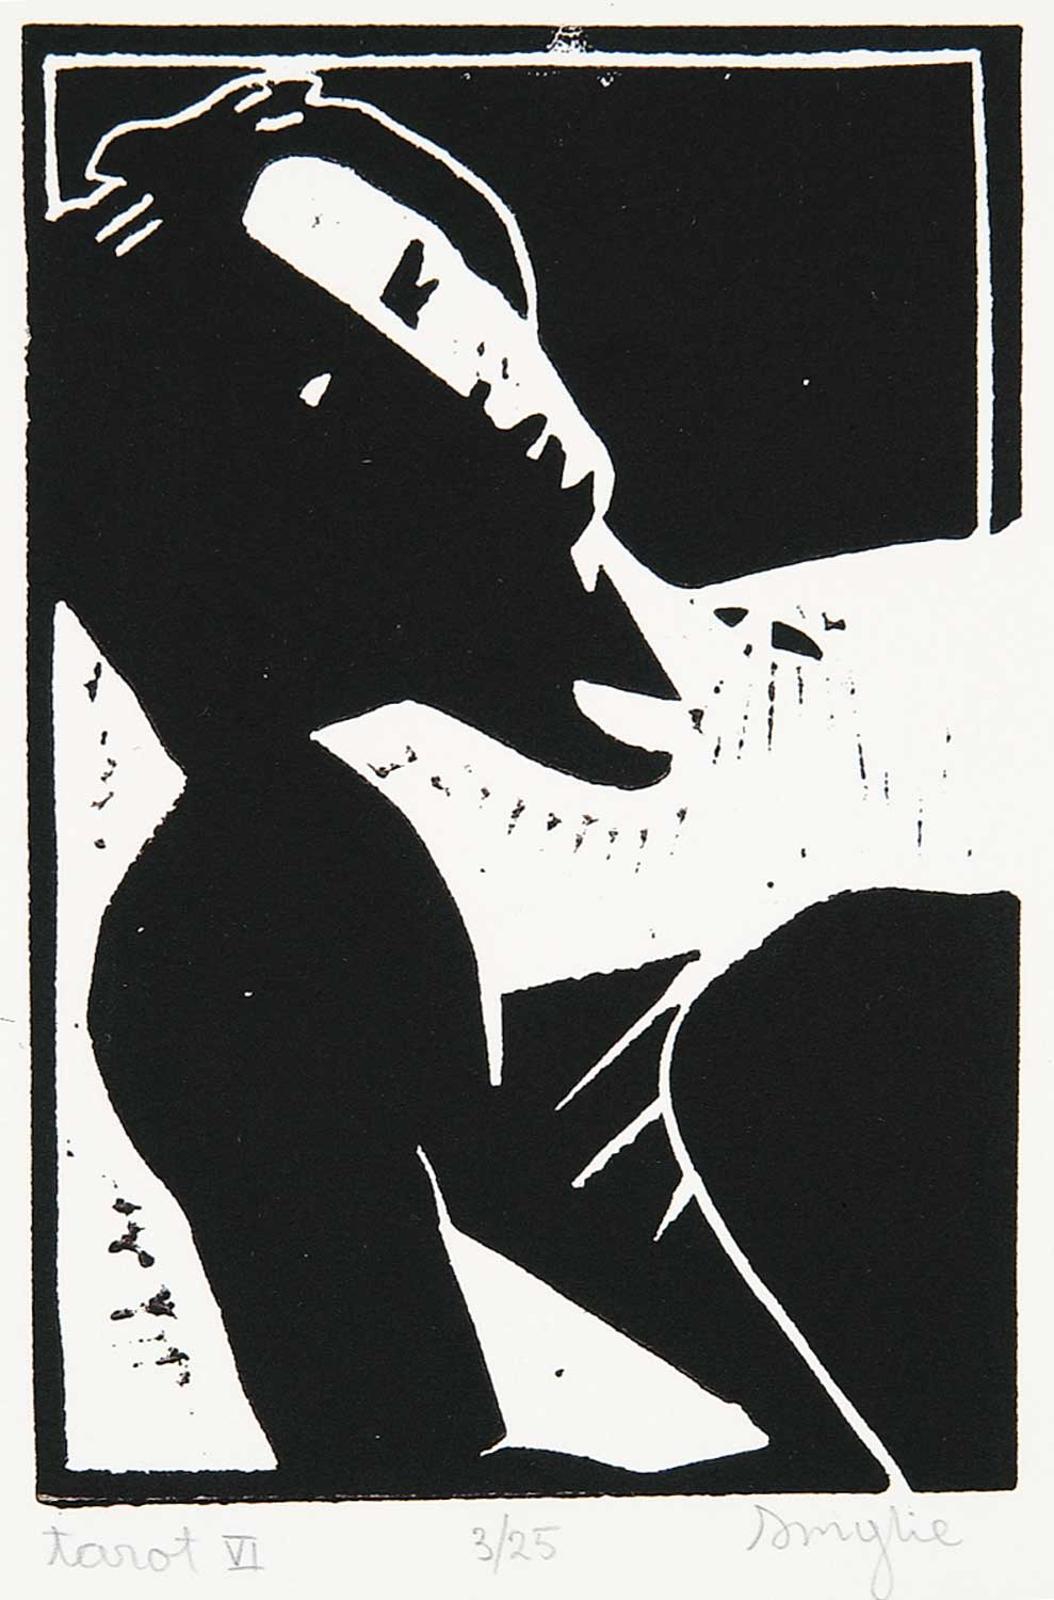 Barry Douglas Smylie (1948) - Tarot VI  #3/25